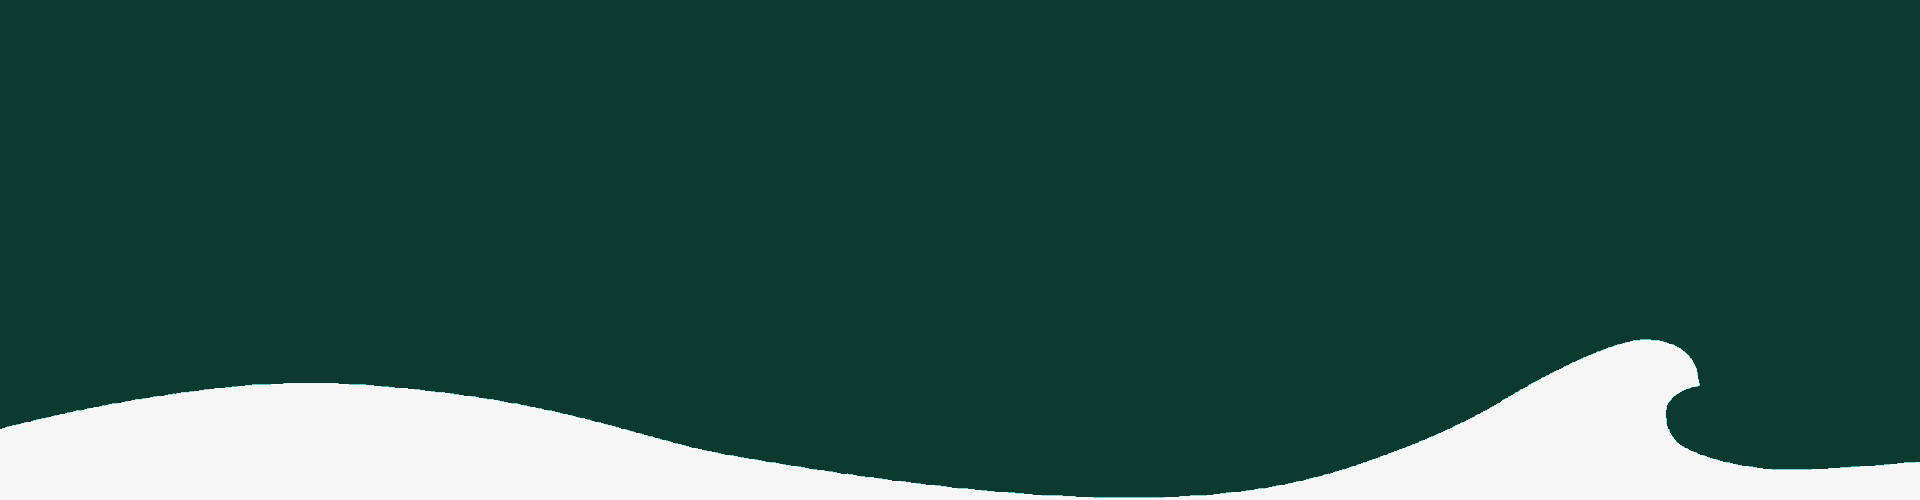 Symbolbild Welle in Grün